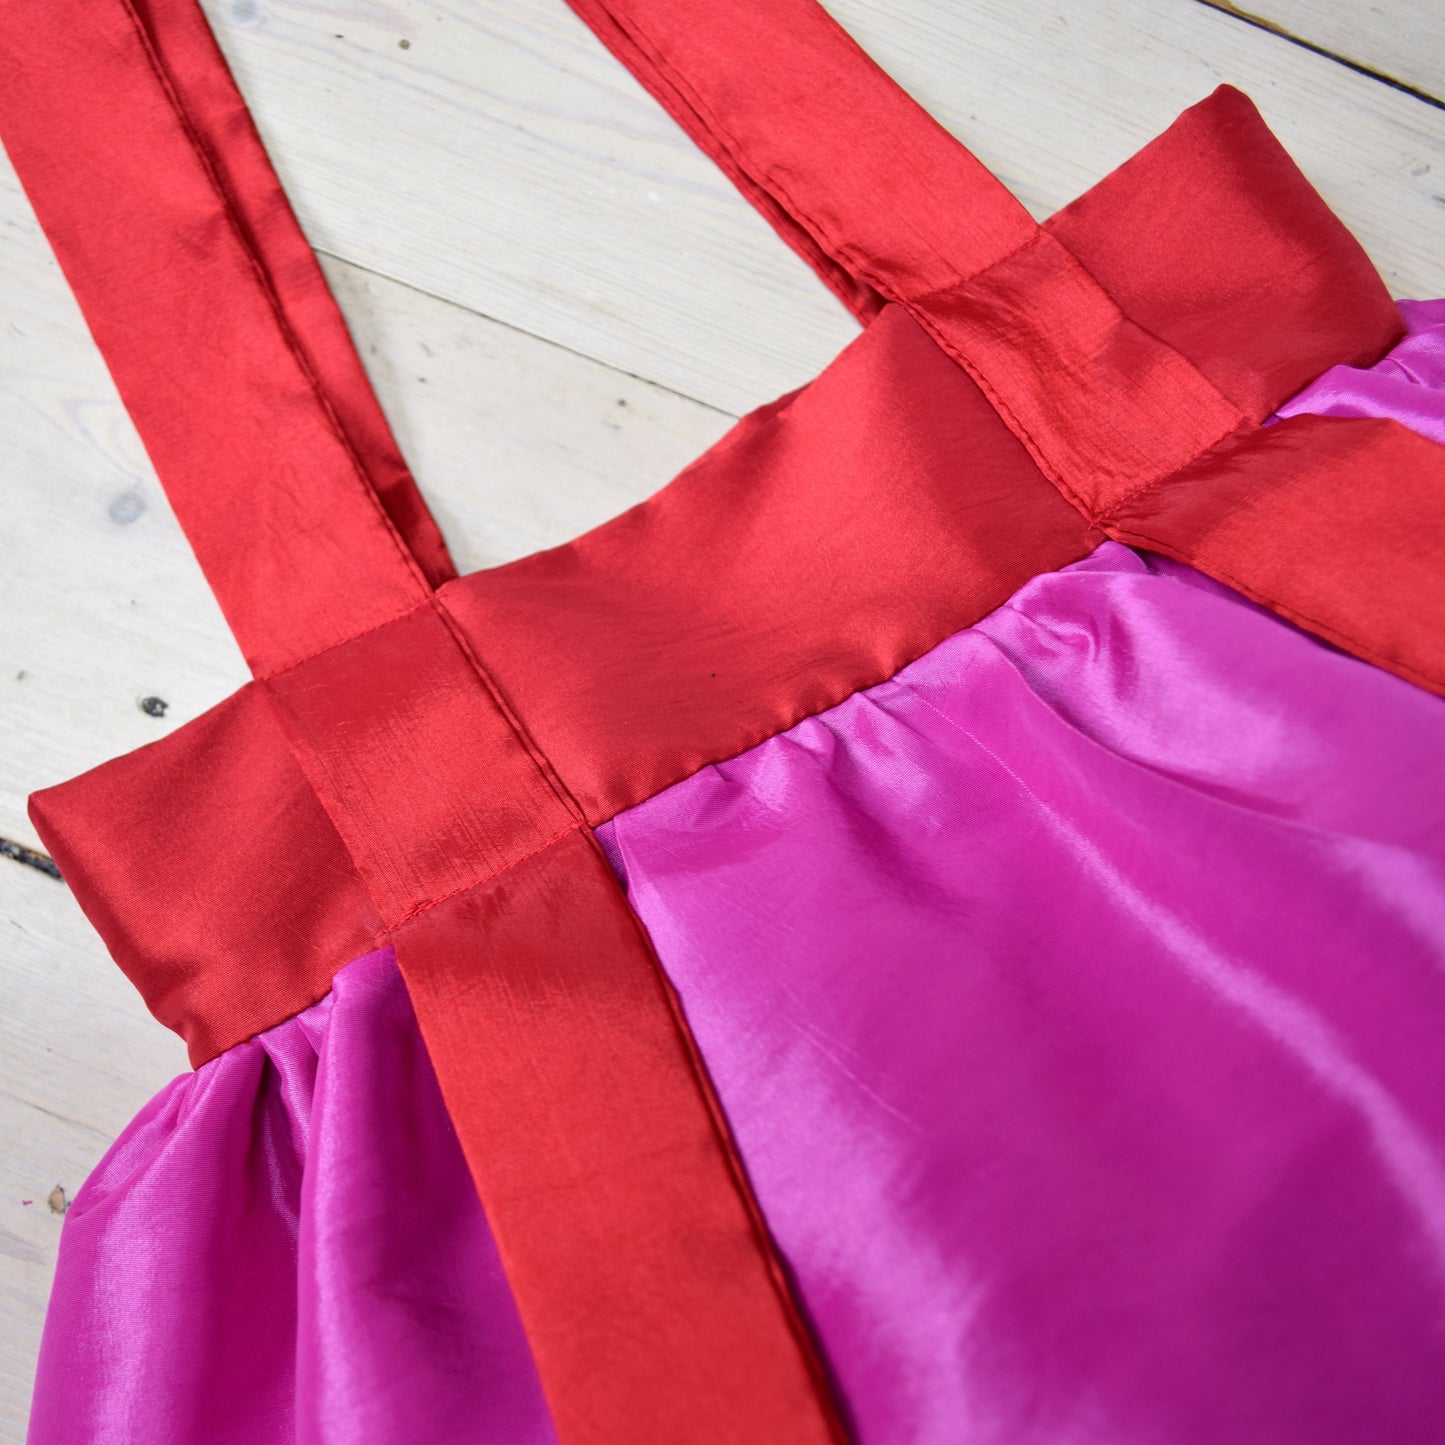 Satin Tote Bag - Pink & Red Taffeta